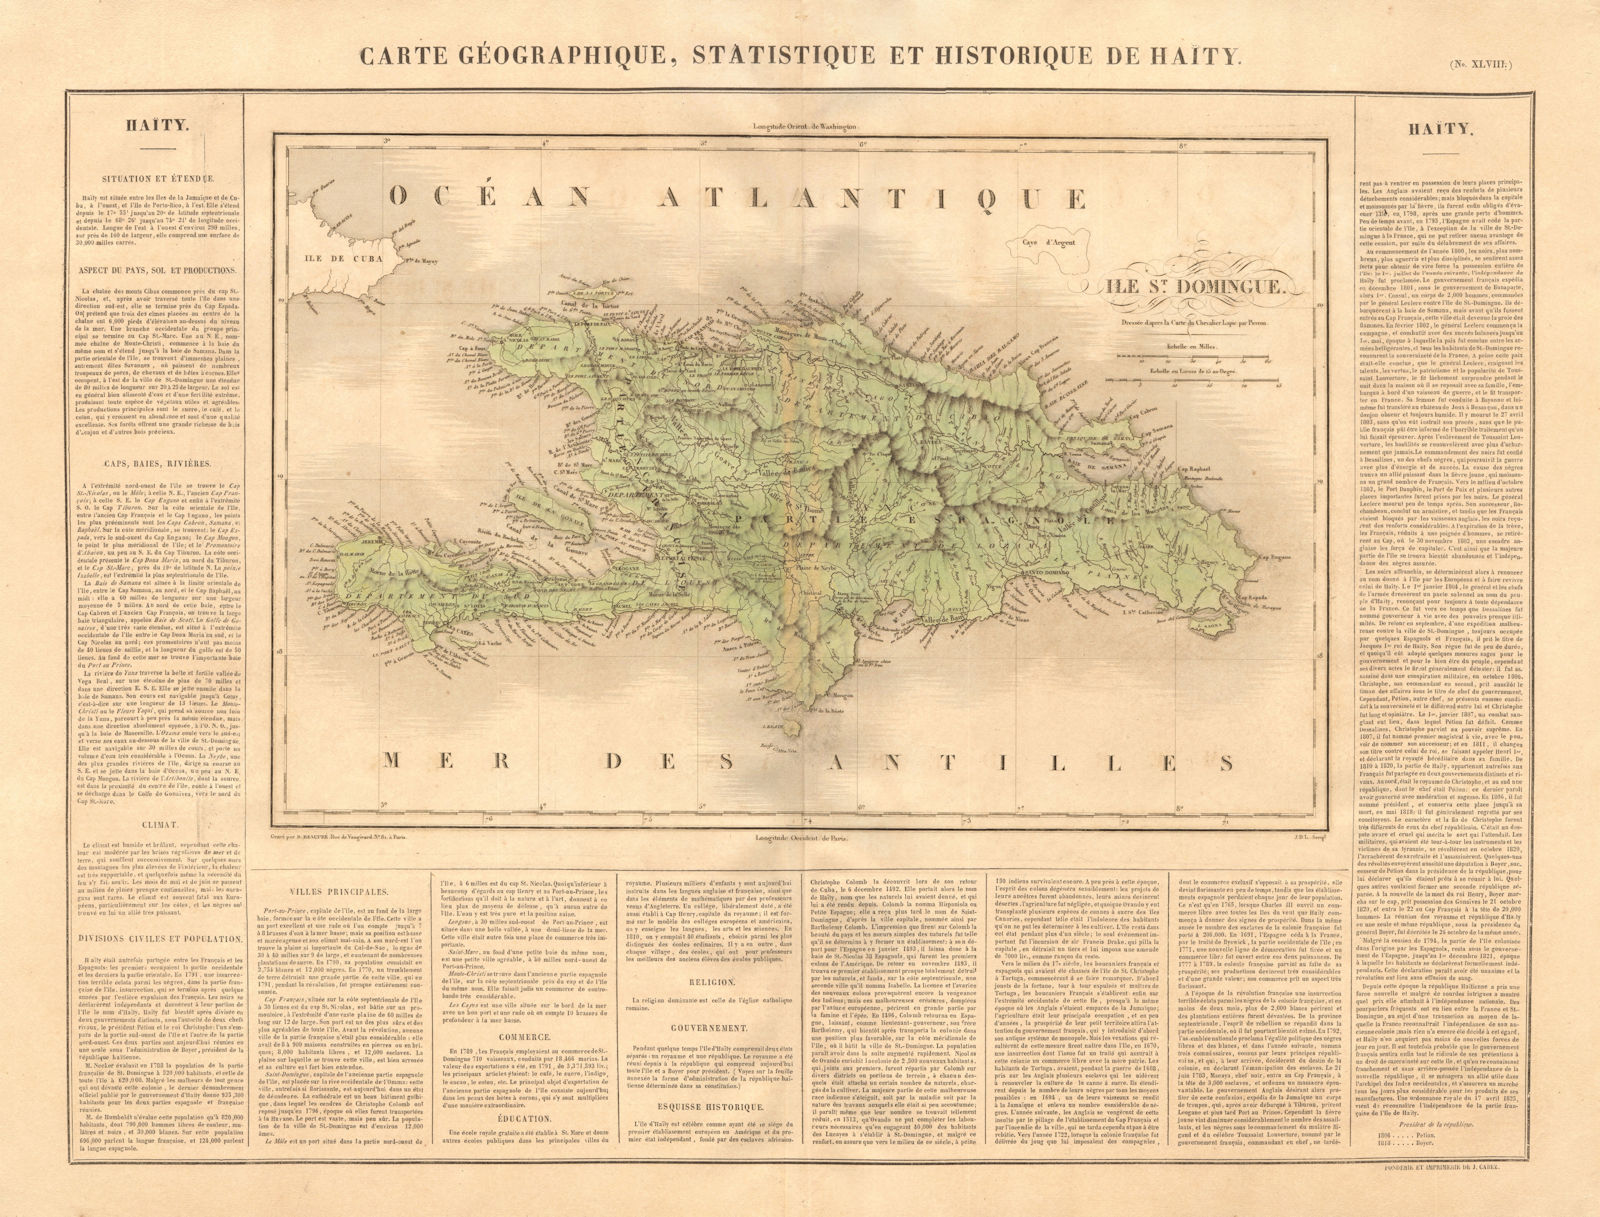 'Haity. Ile St-Domingue'. Unified Hispaniola. Santo Domingo. BUCHON 1825 map